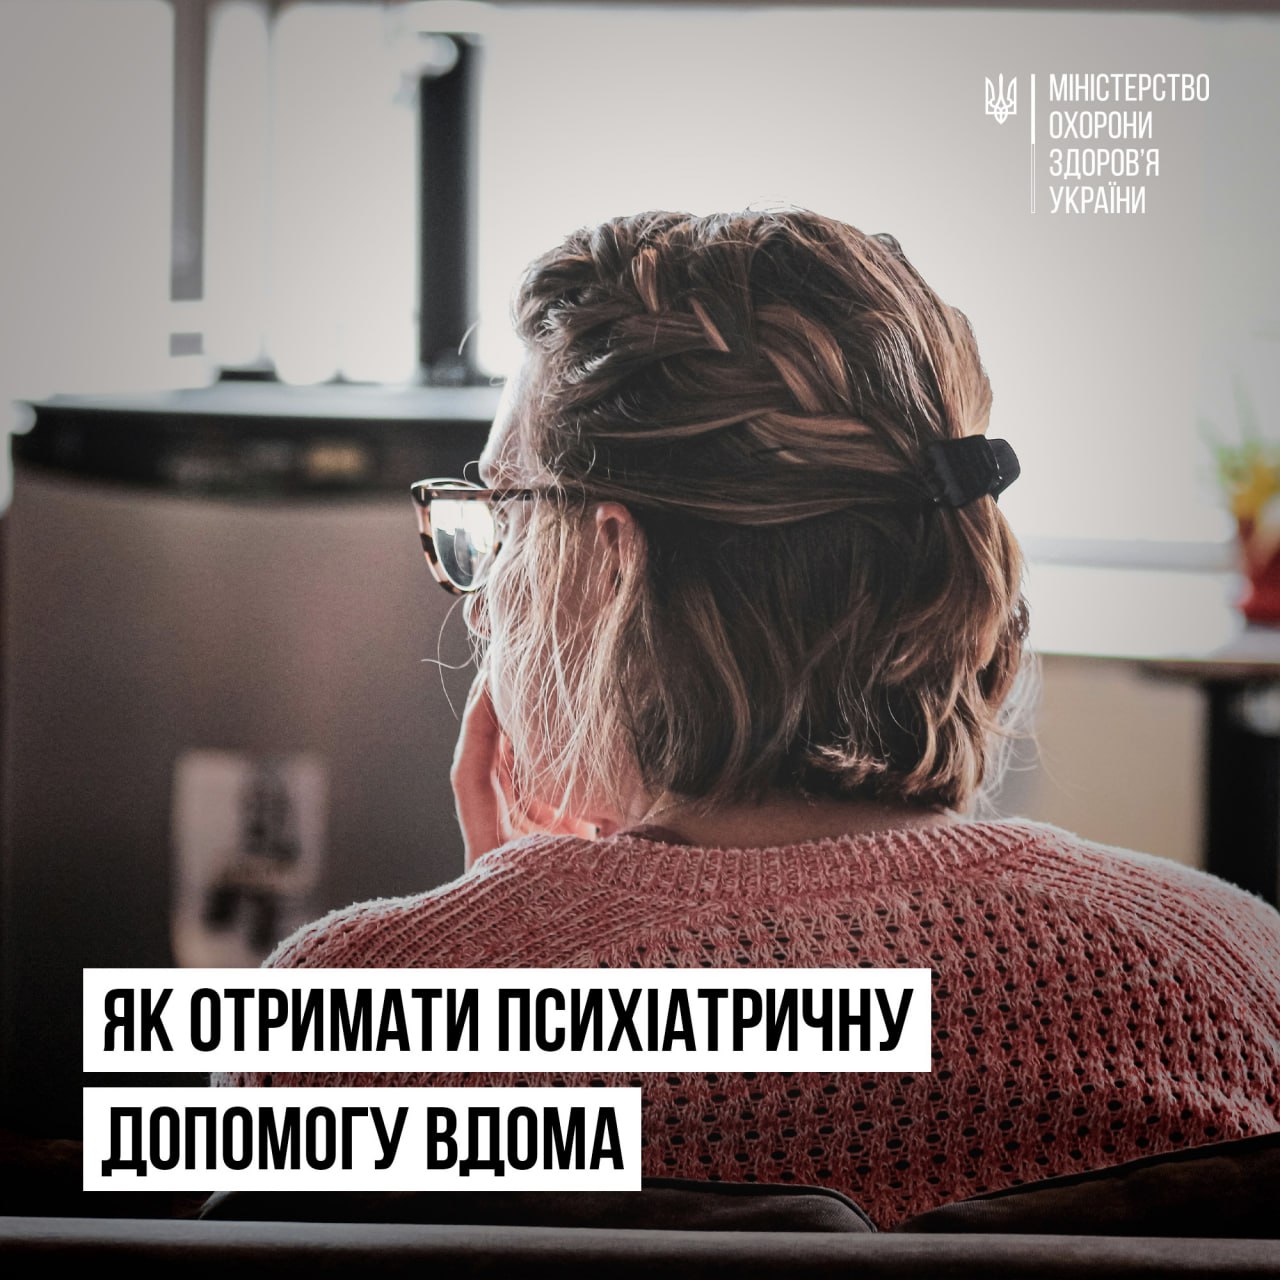 Постер МОЗ України - Як отримати психіатричну допомогу вдома.